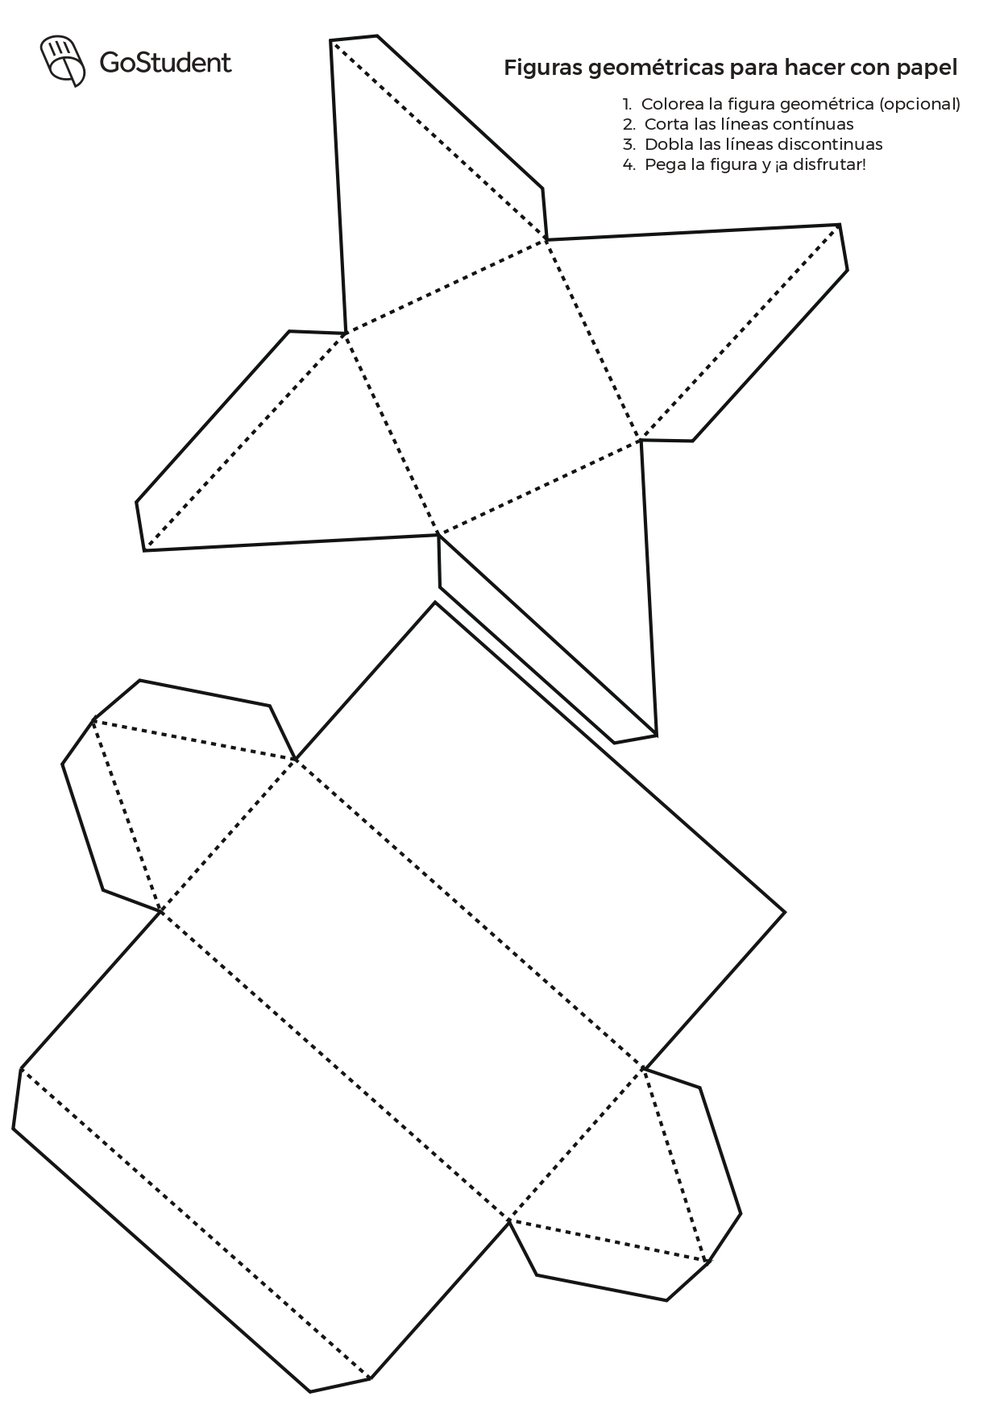 Figuras De Papel En 3d PDF: Cómo hacer figuras geométricas de papel en 3D | GoStudent